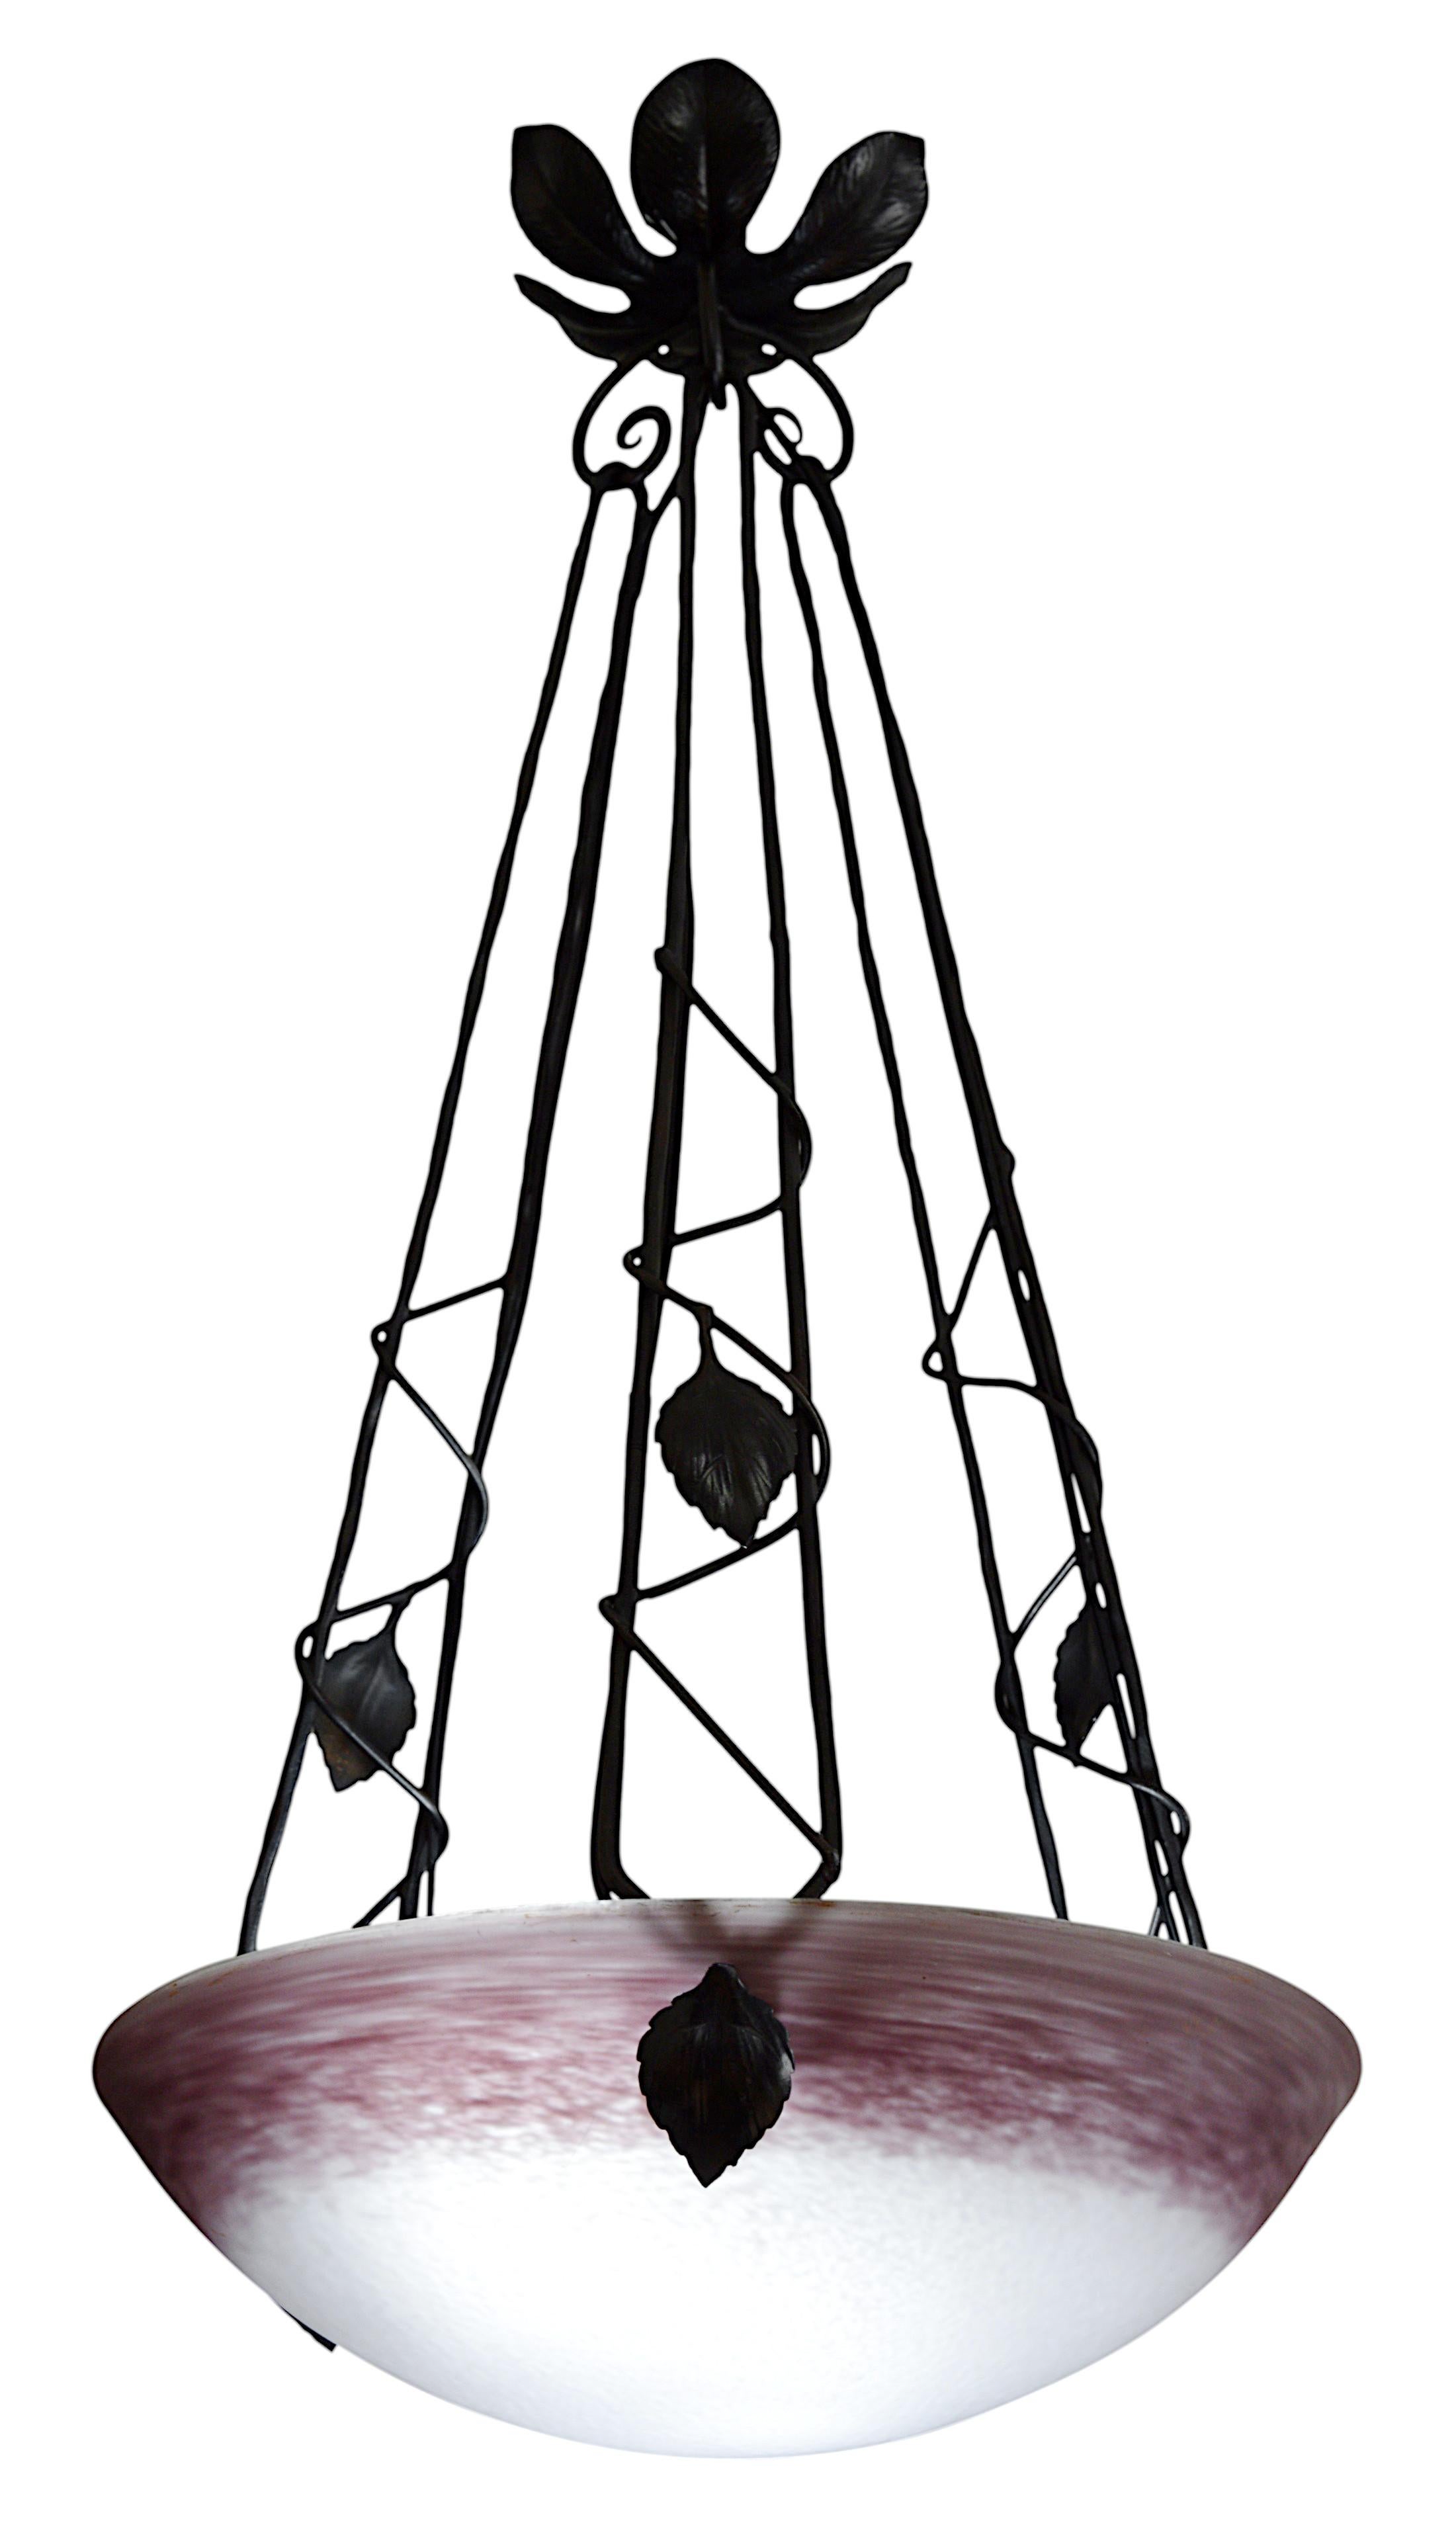 Lustre suspendu Art Déco par DEGUE (Compiègne), France, fin des années 1920. Abat-jour en verre tacheté. Couleurs : violet et blanc. Fixation en fer forgé. Hauteur : 65 cm (25,6